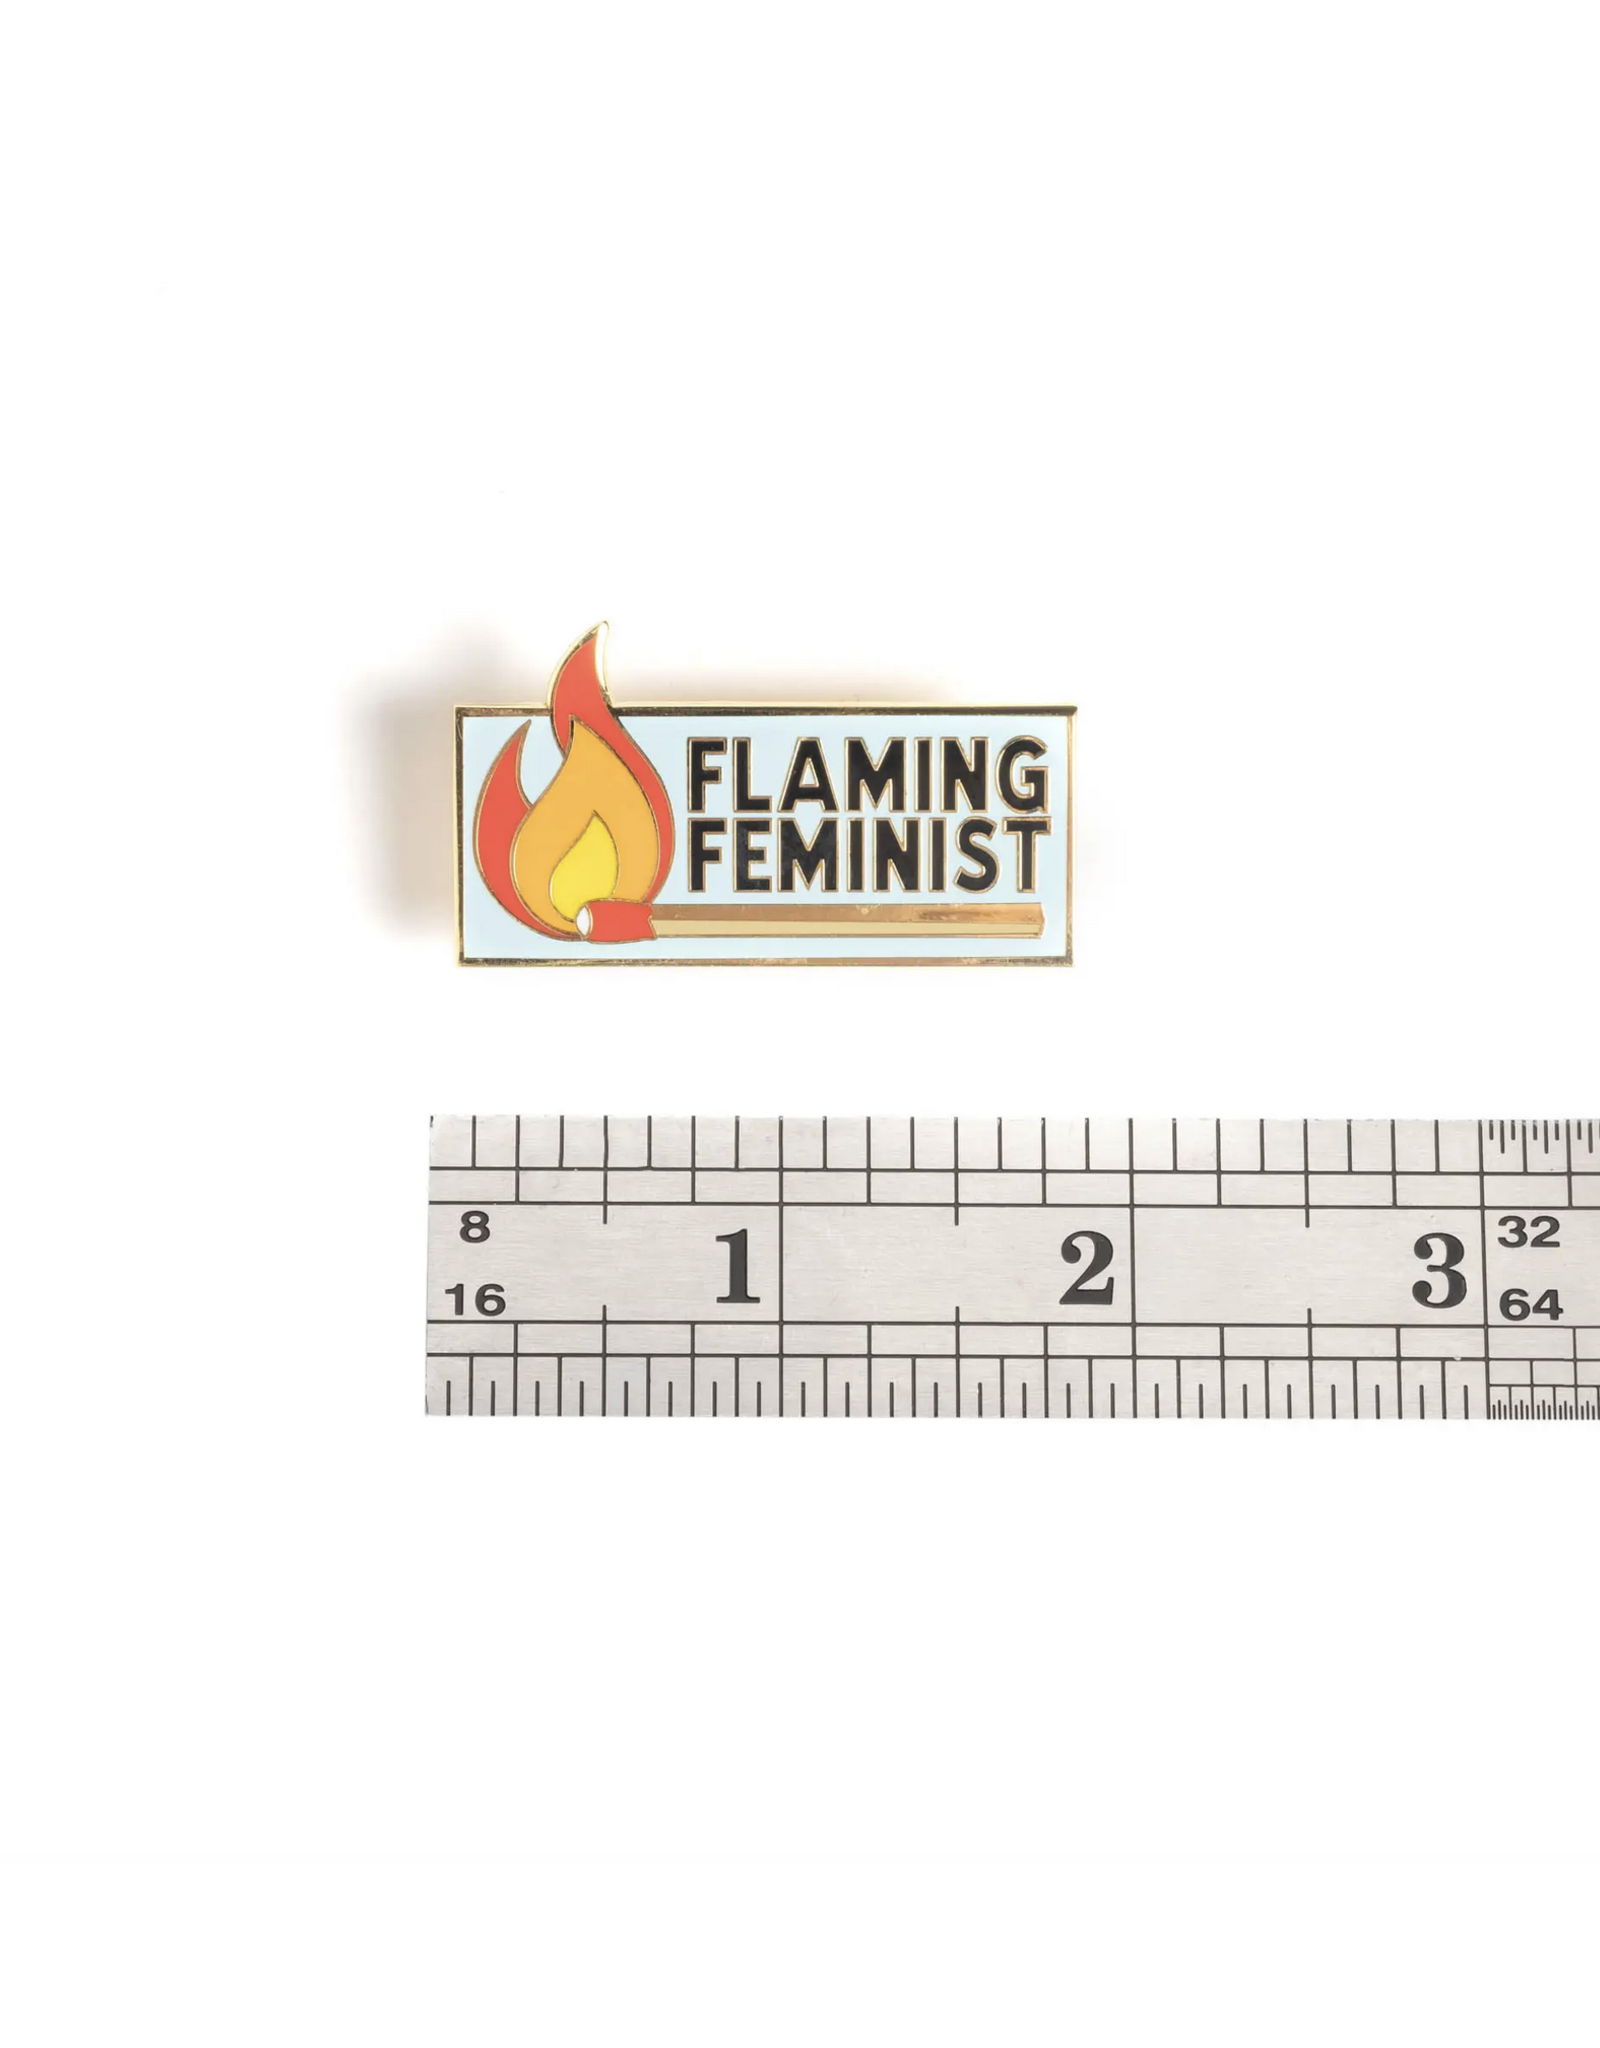 Flaming Feminist Pin